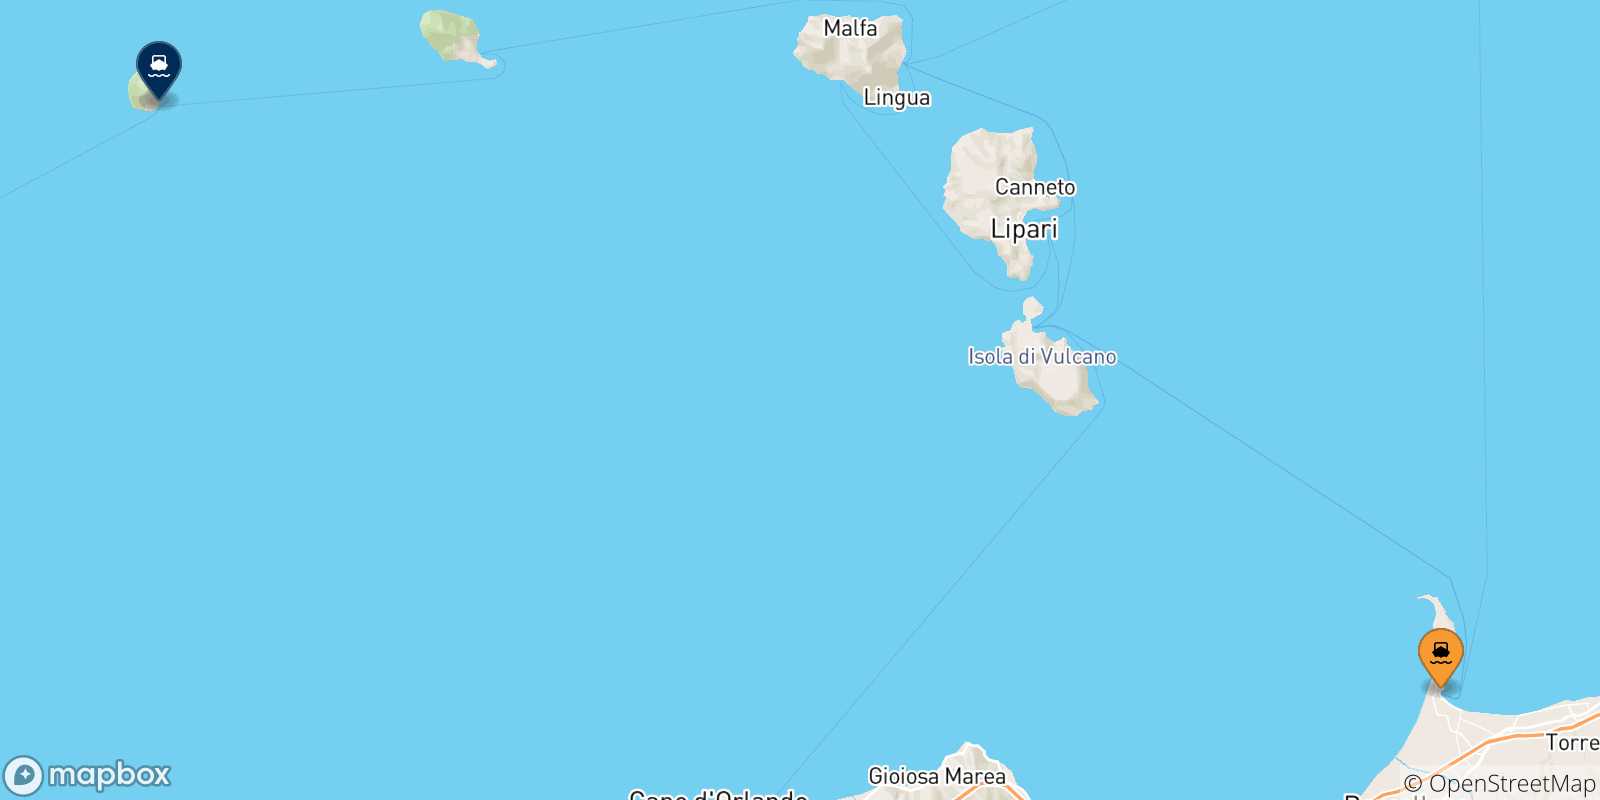 Mappa delle possibili rotte tra la Sicilia e Alicudi